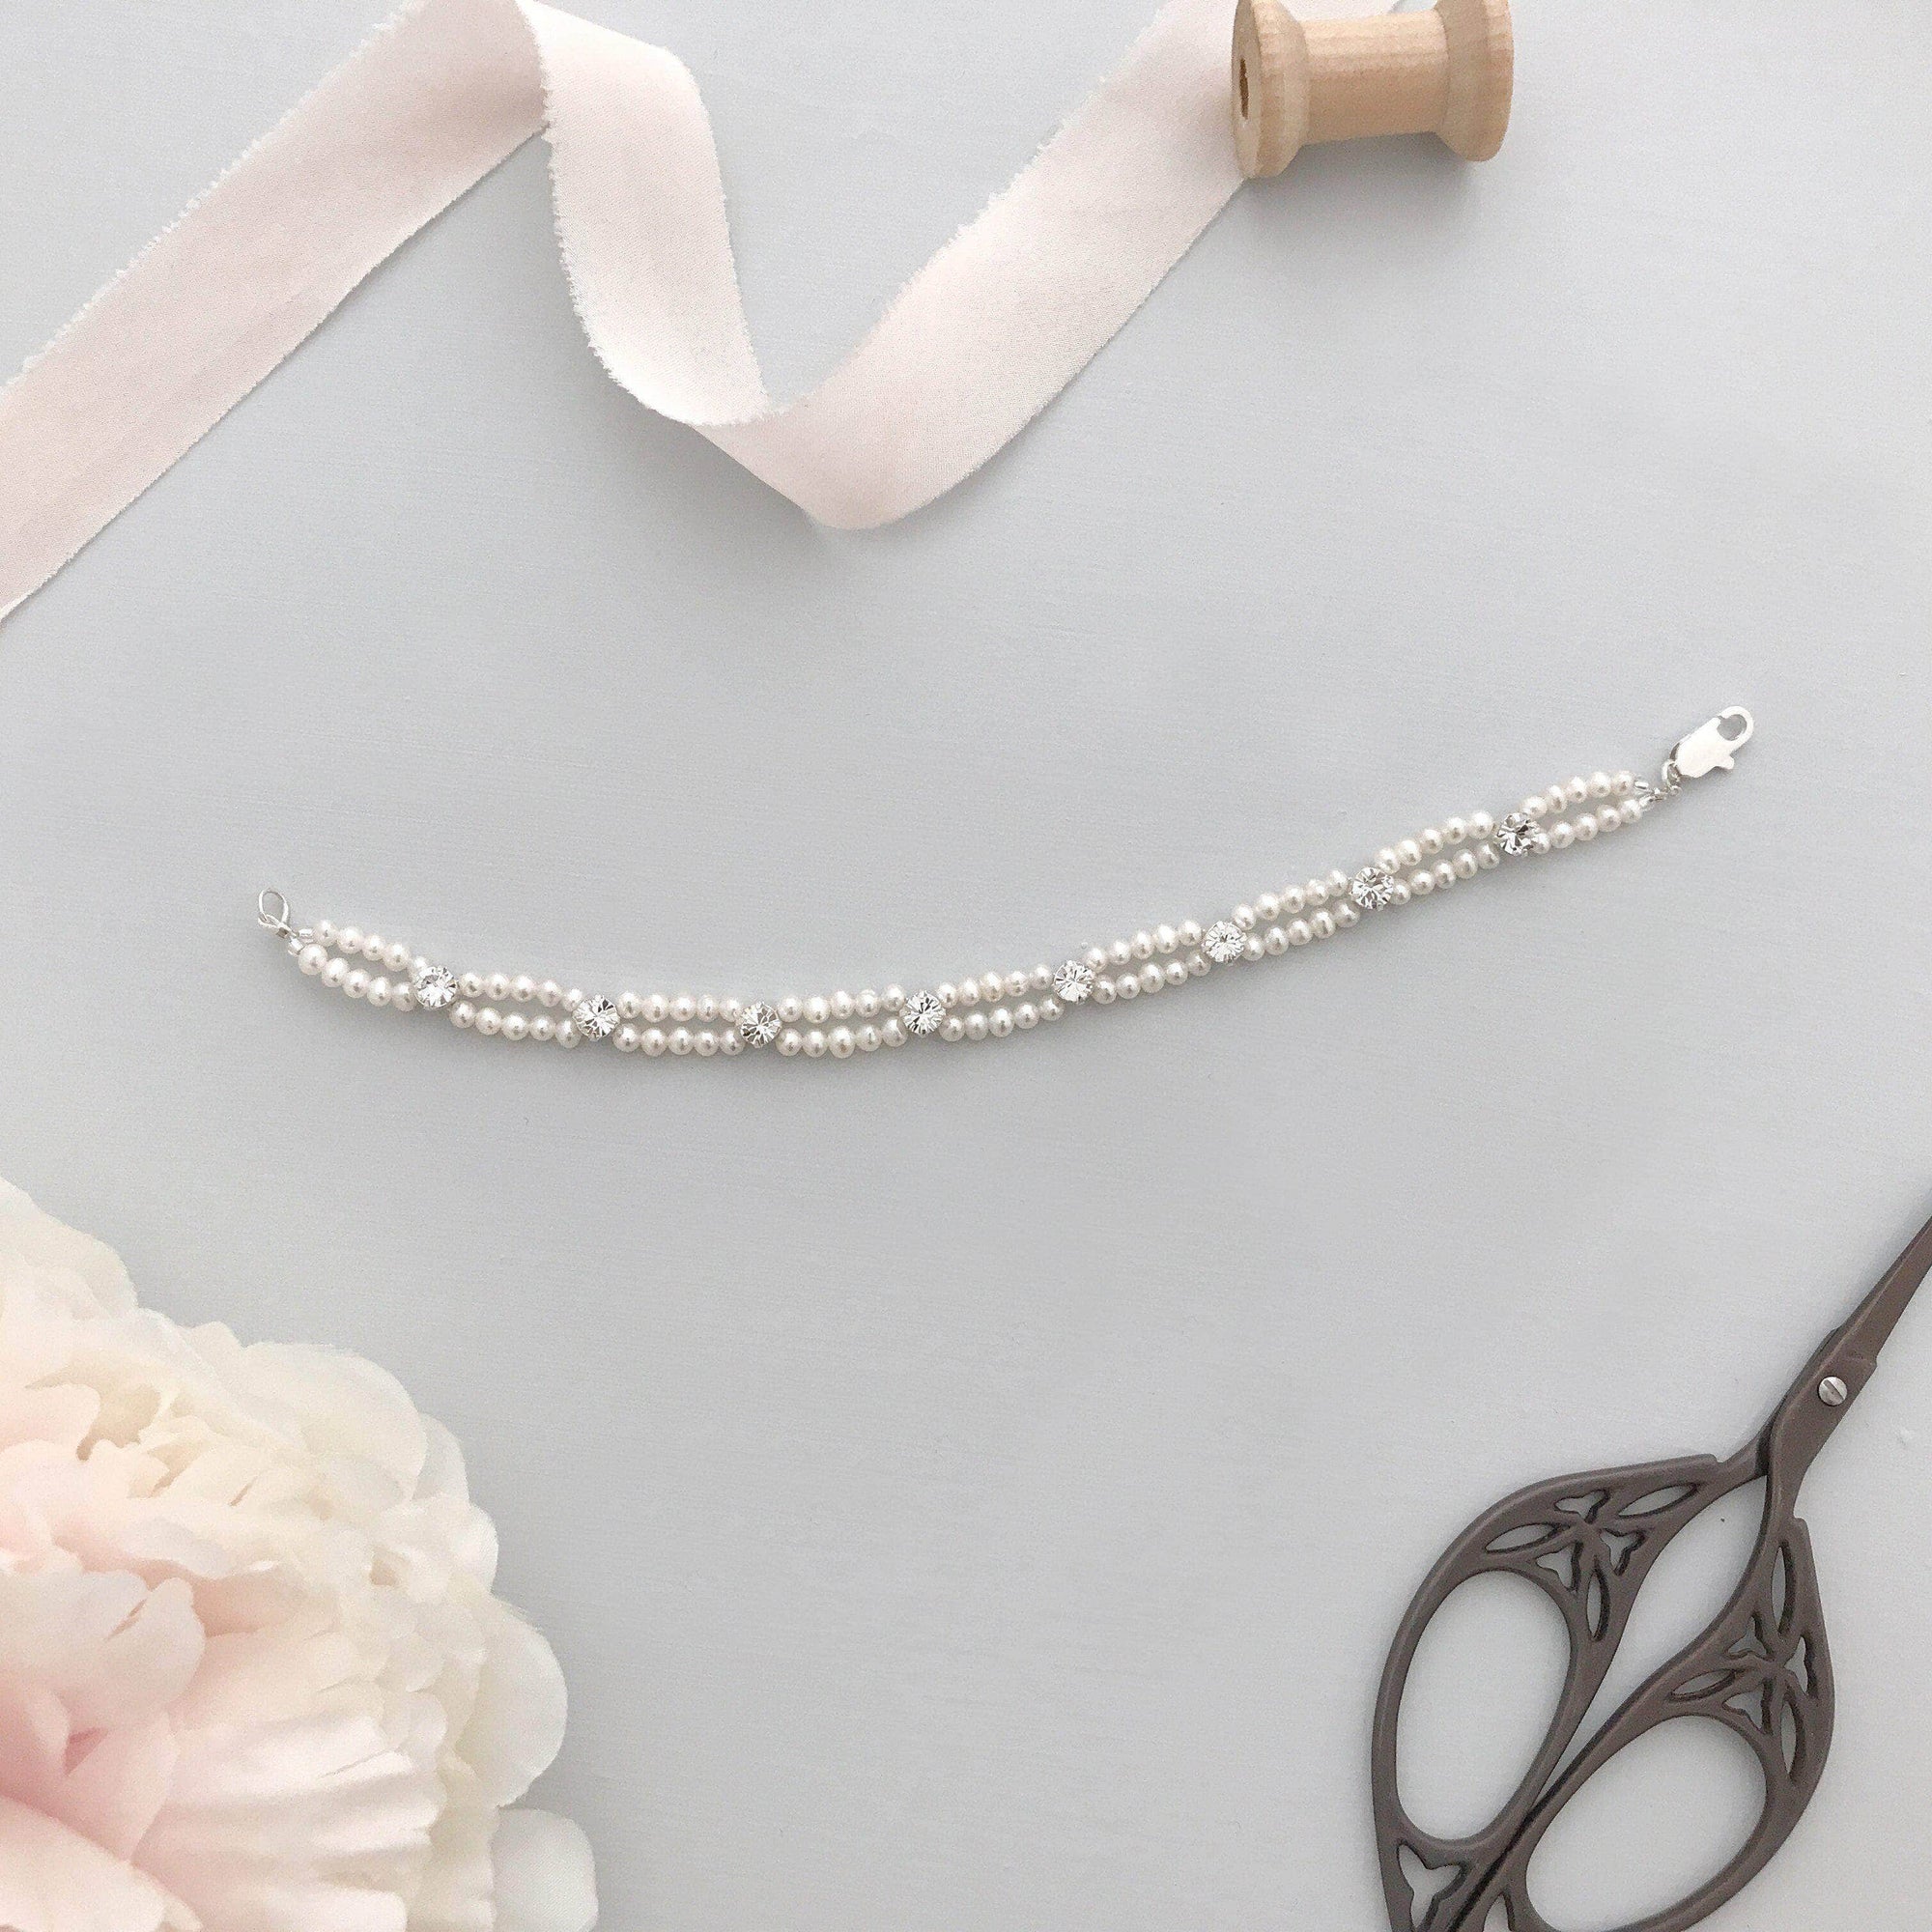 Wedding Cuff Silver Freshwater pearl and crystal wedding bracelet - 'Faith'